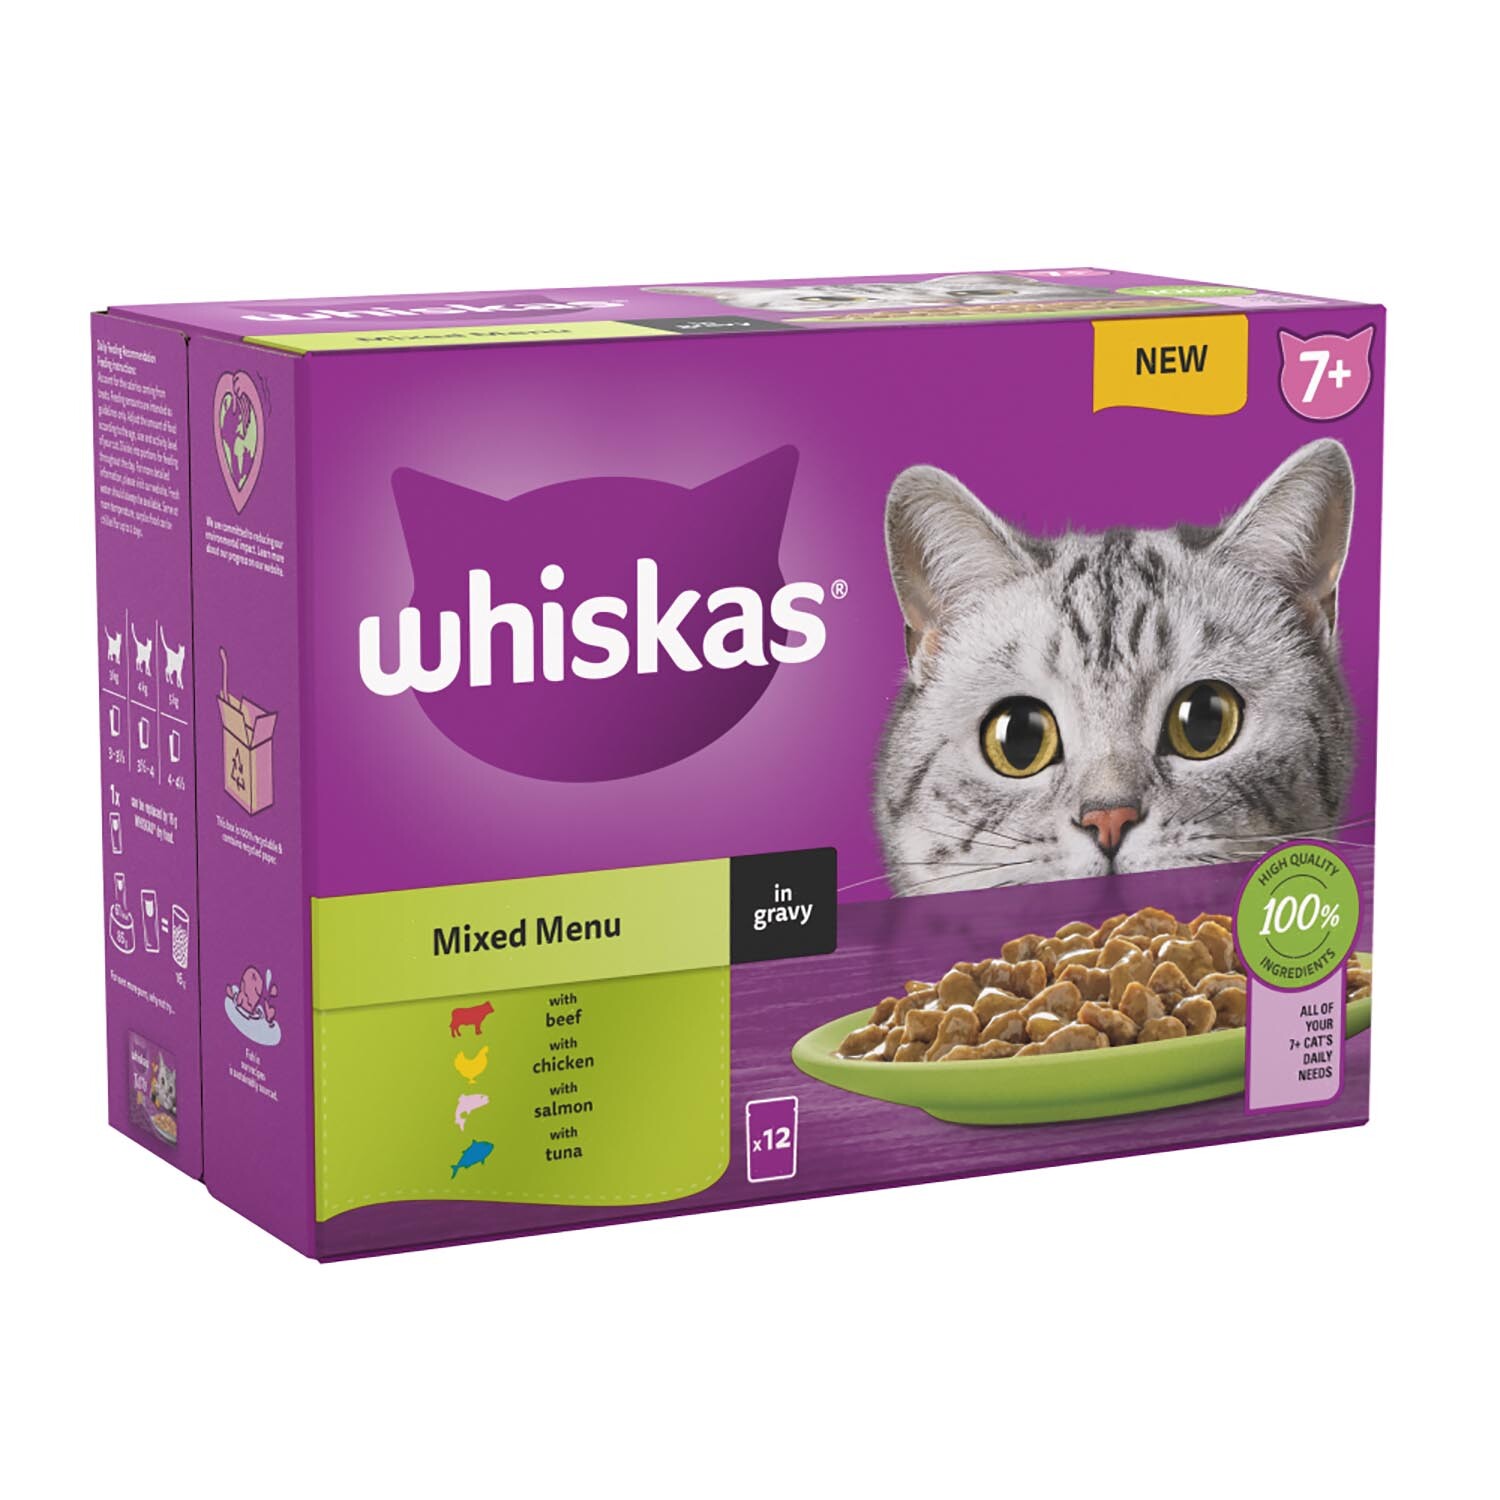 Whiskas 7+ Cat Food Pouches in Gravy - Beef, Chicken, Salmon, Tuna Image 2